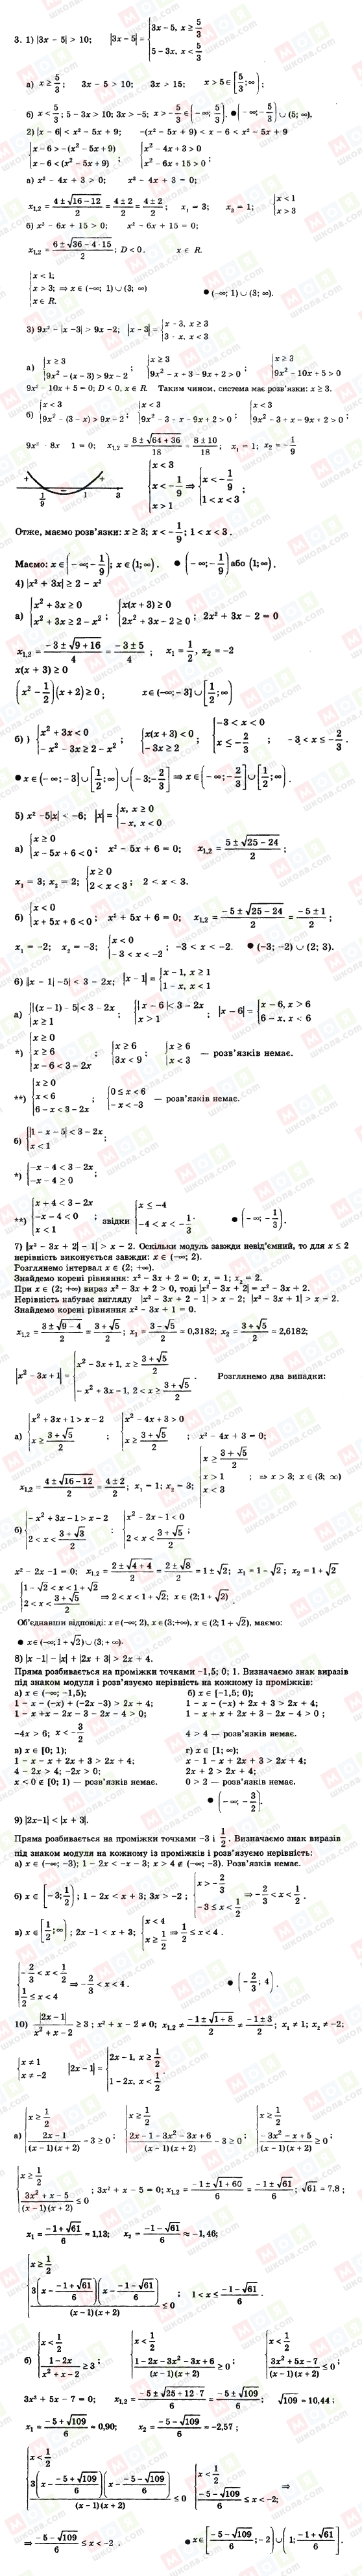 ГДЗ Алгебра 11 класс страница 3